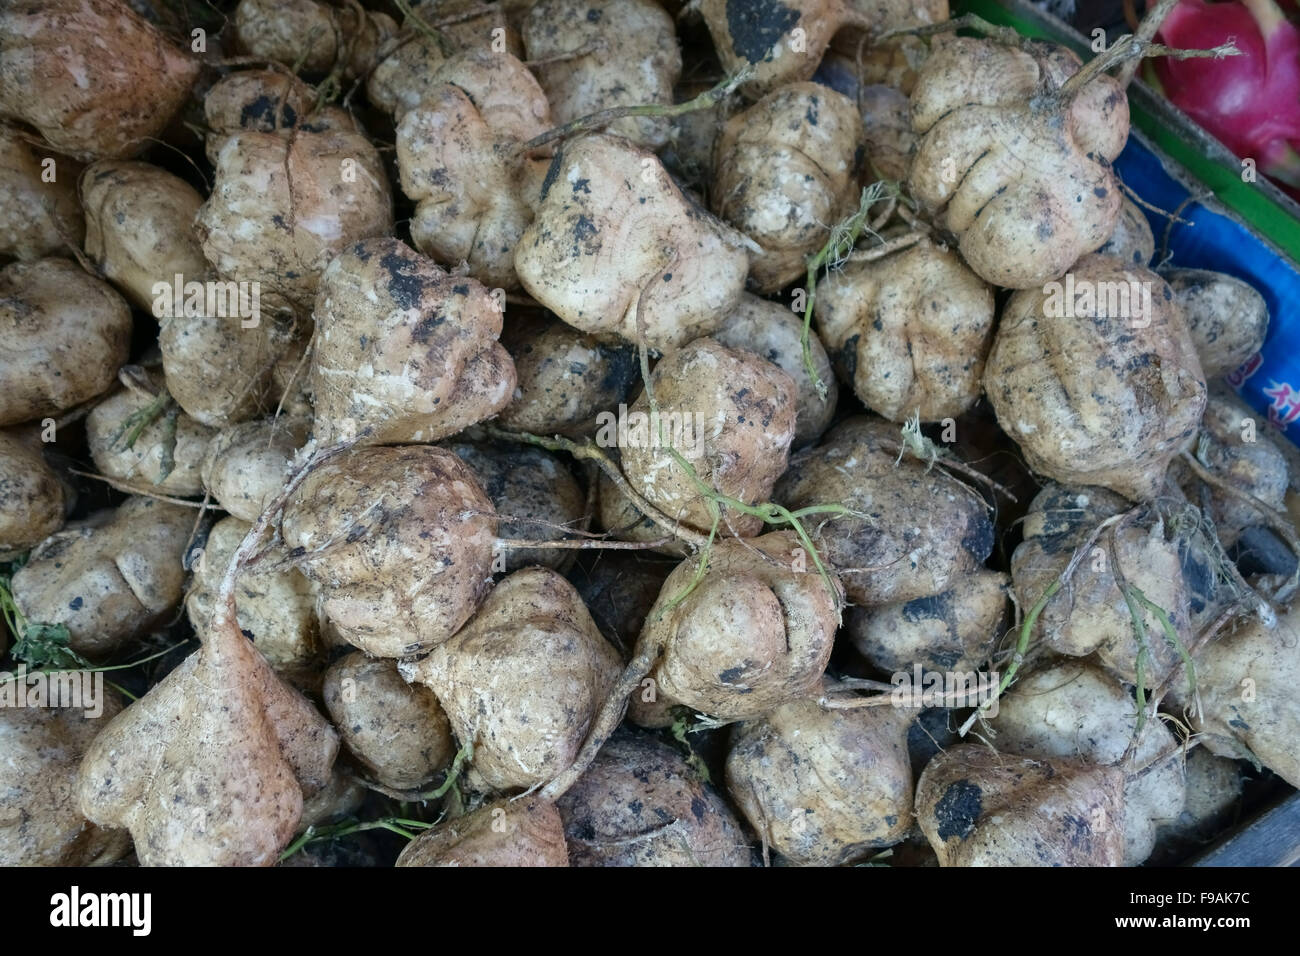 Le Jicama, mexicains ou yambean navet mexicain racines tubéreuses à vendre dans un marché de l'alimentation humide Bangkok Thaïlande Banque D'Images